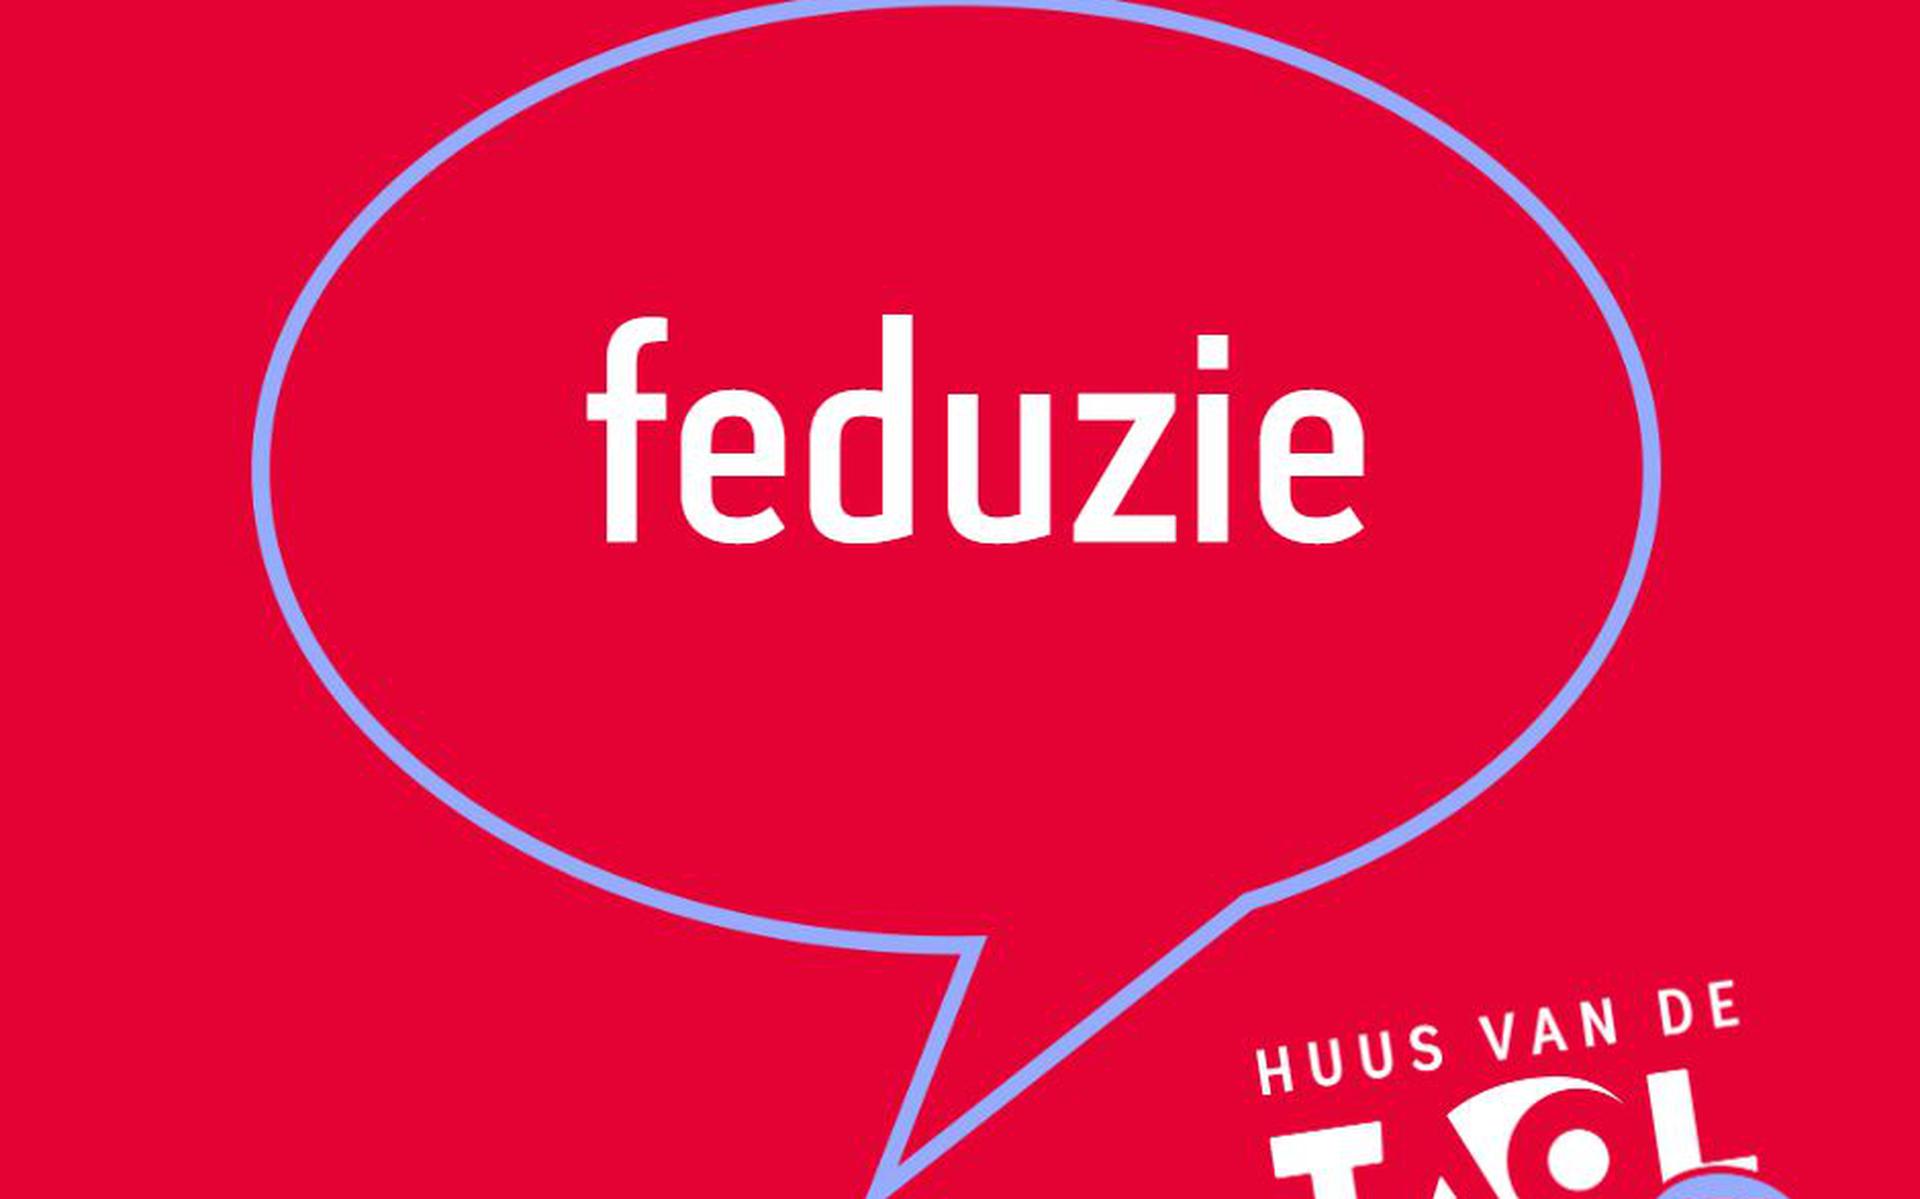 Feduzie